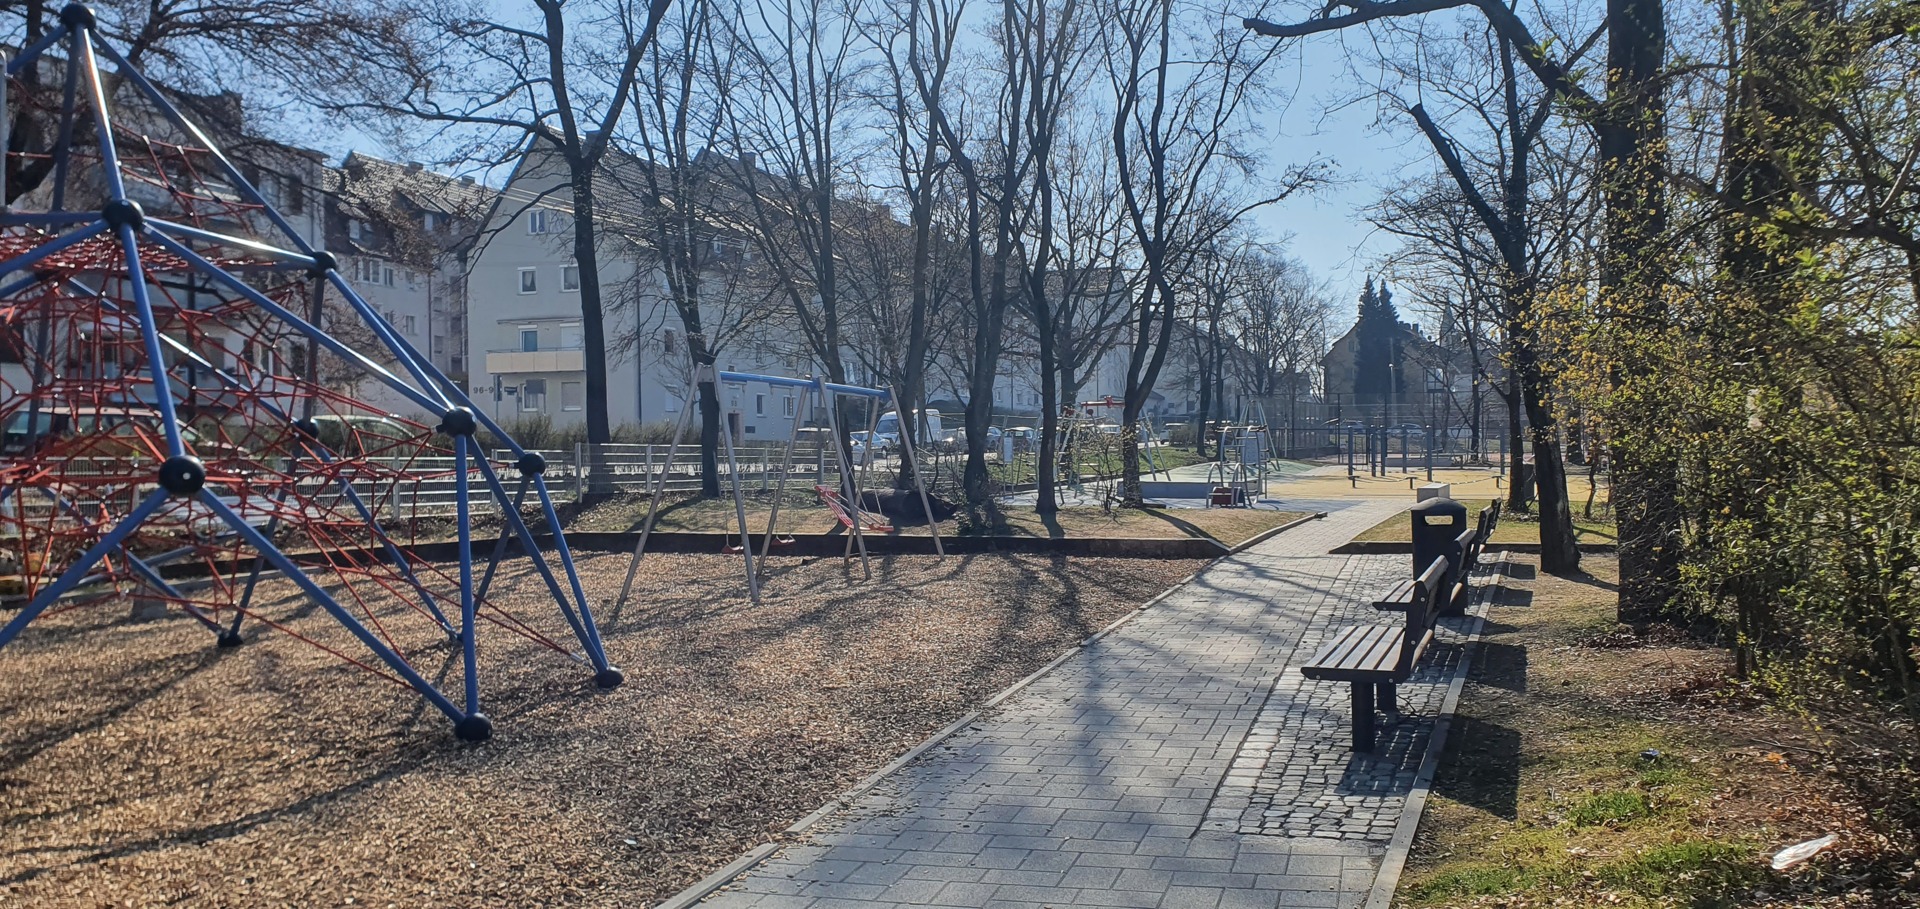 Blick auf den Spielplatz: Links sind die Spielgeräte zu sehen. In der Mitte des Bildes ist ein gepflasterter Weg  an dem rechts Sitzbänke aufgestellt sind. Der Spielplatz ist links und rechts von Bäumen gesäumt.